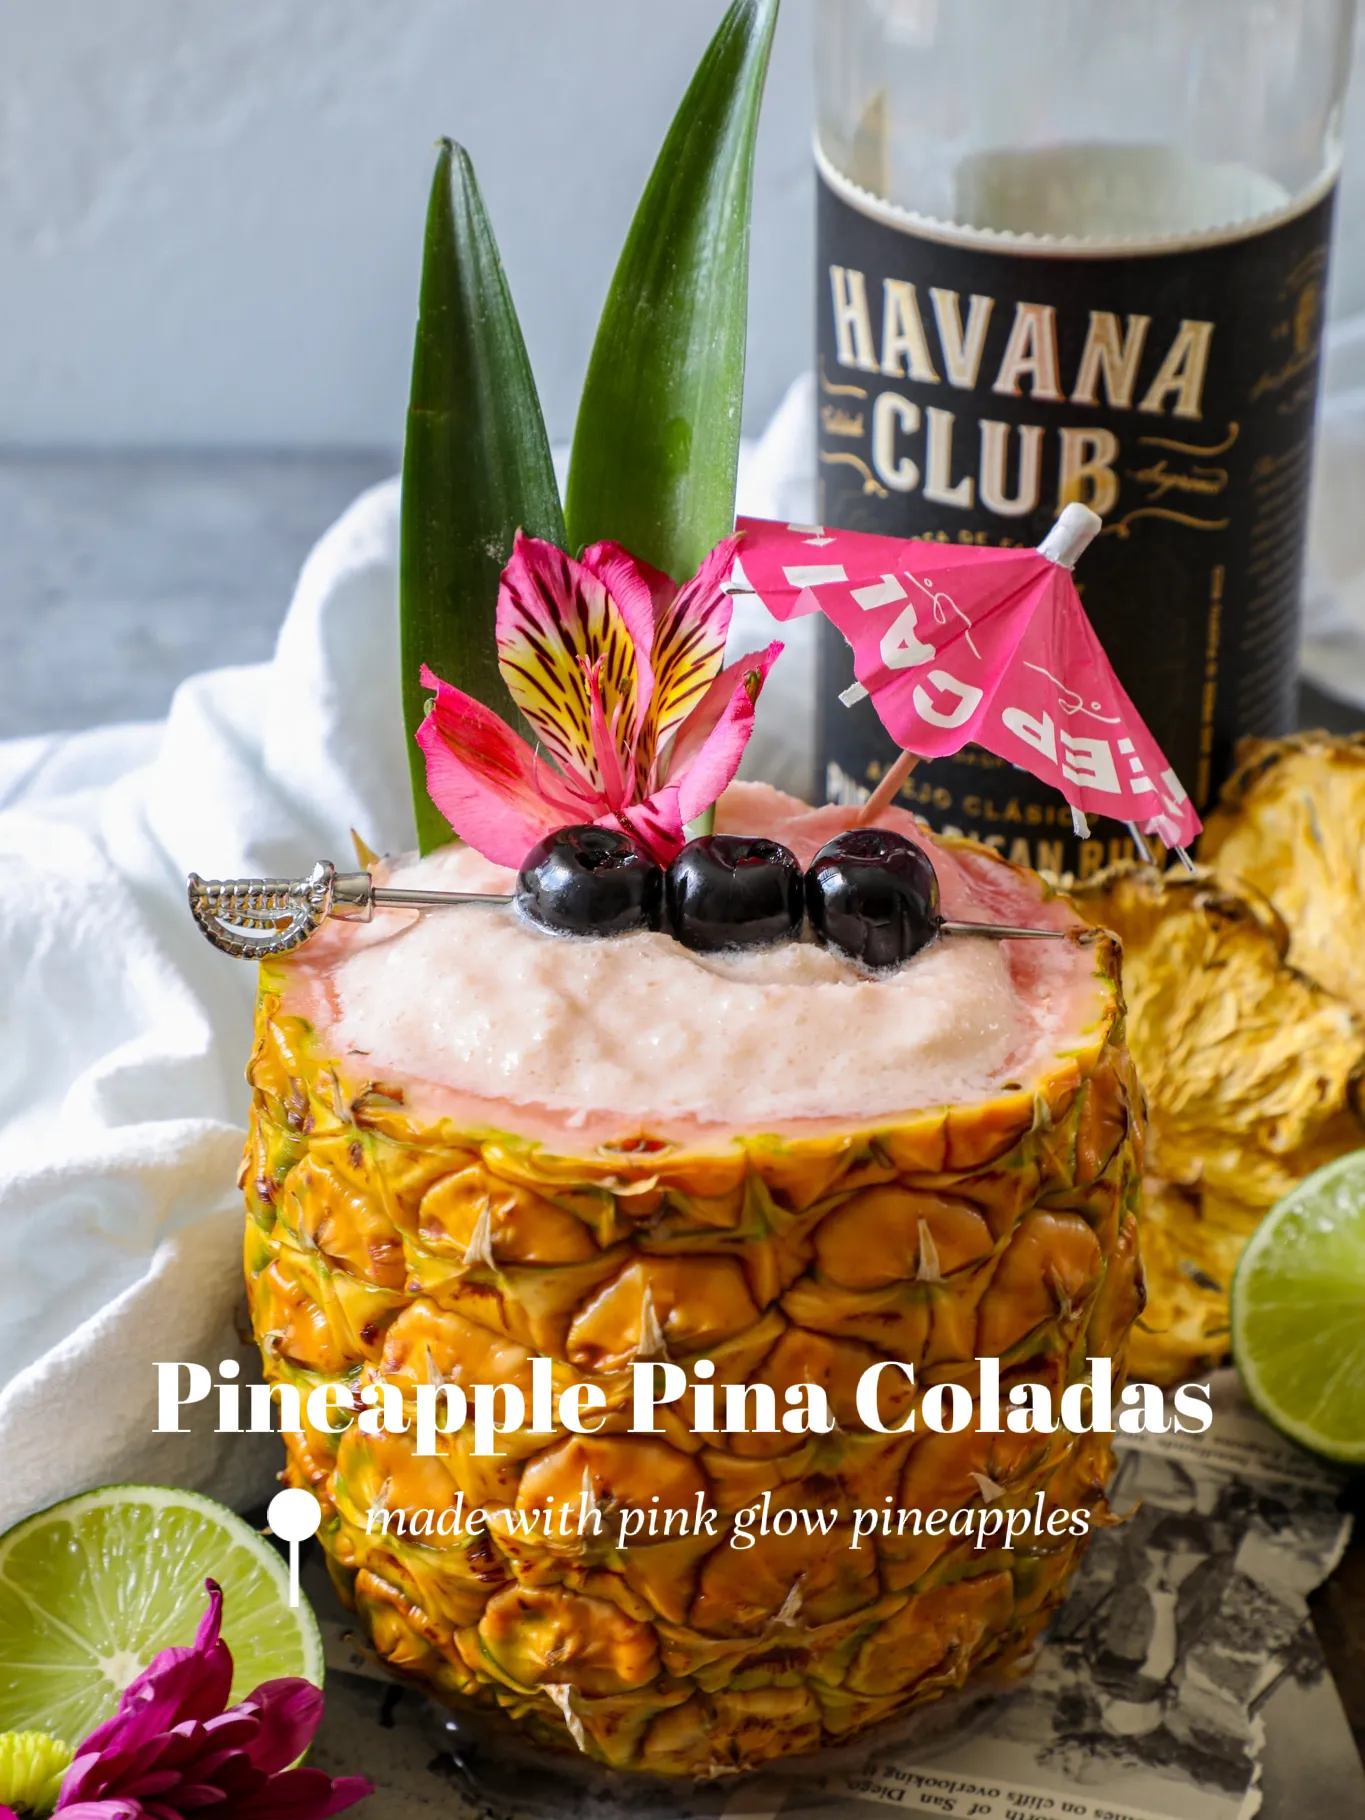 Pineapple Frozen Margarita Recipe - The Happier Homemaker